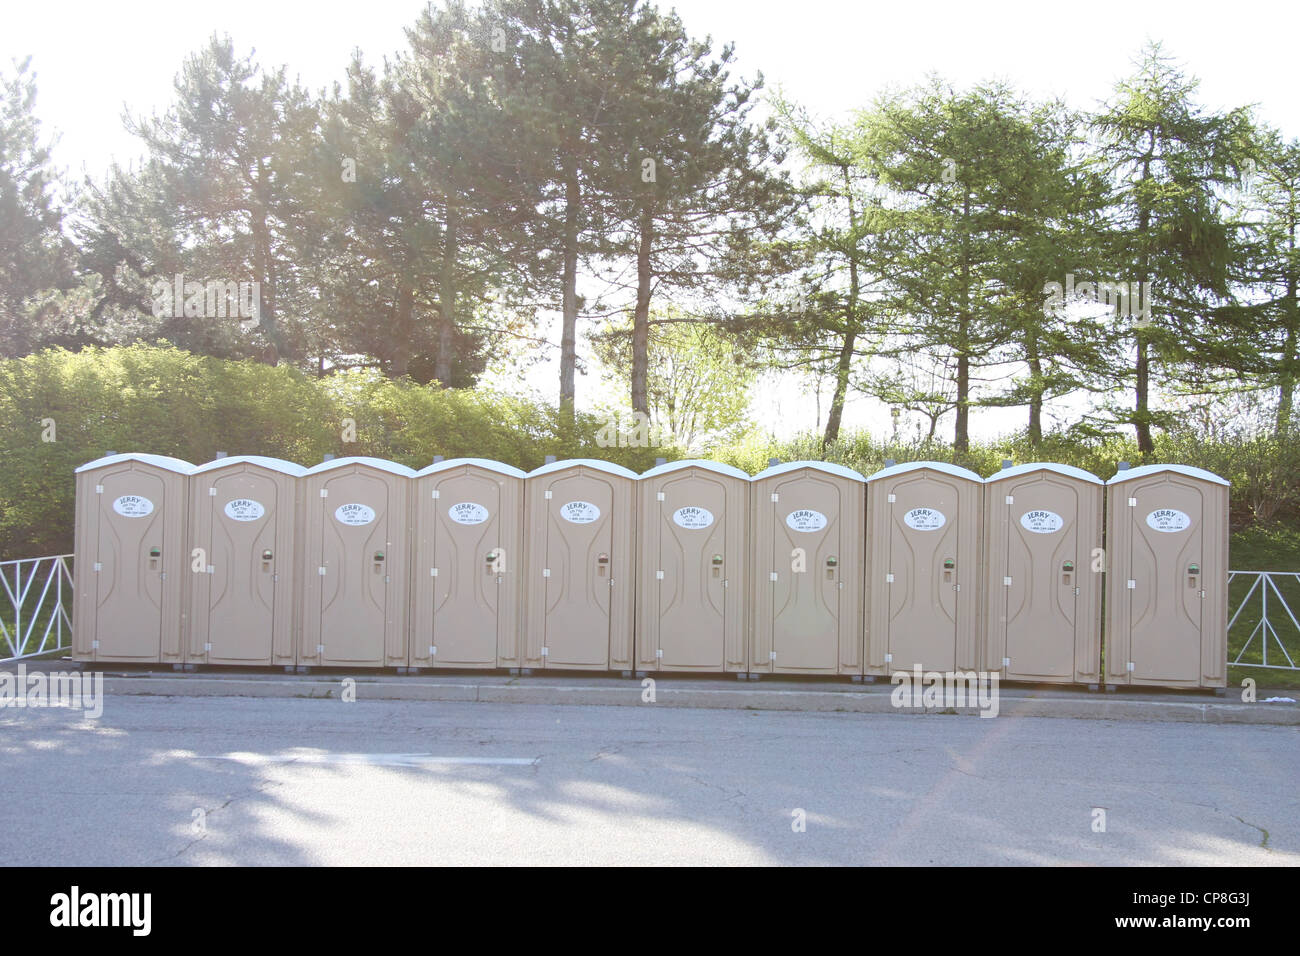 Toilettes portables Toilettes Des toilettes publiques en plein air Banque D'Images